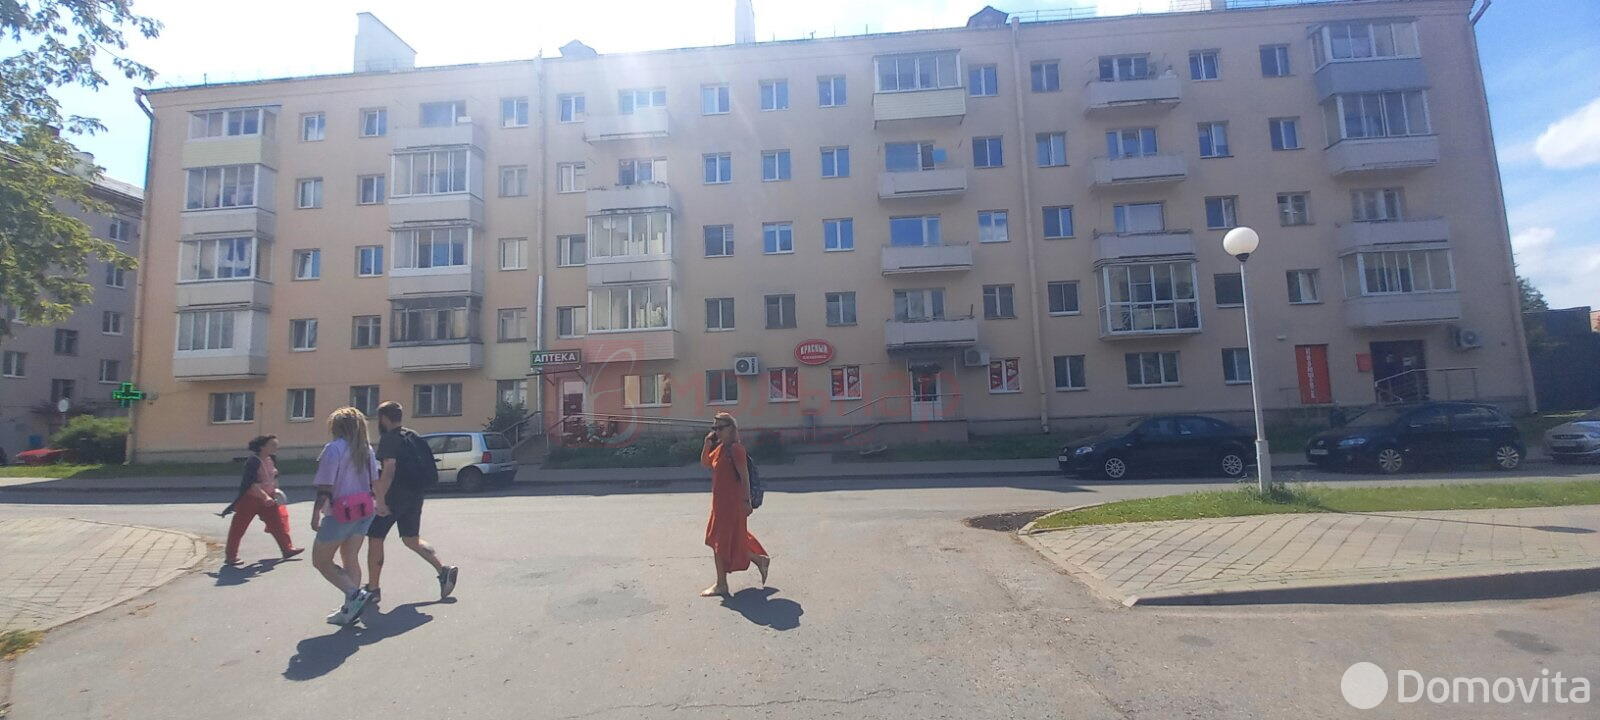 Купить торговое помещение на ул. Белинского, д. 15 в Минске - фото 2